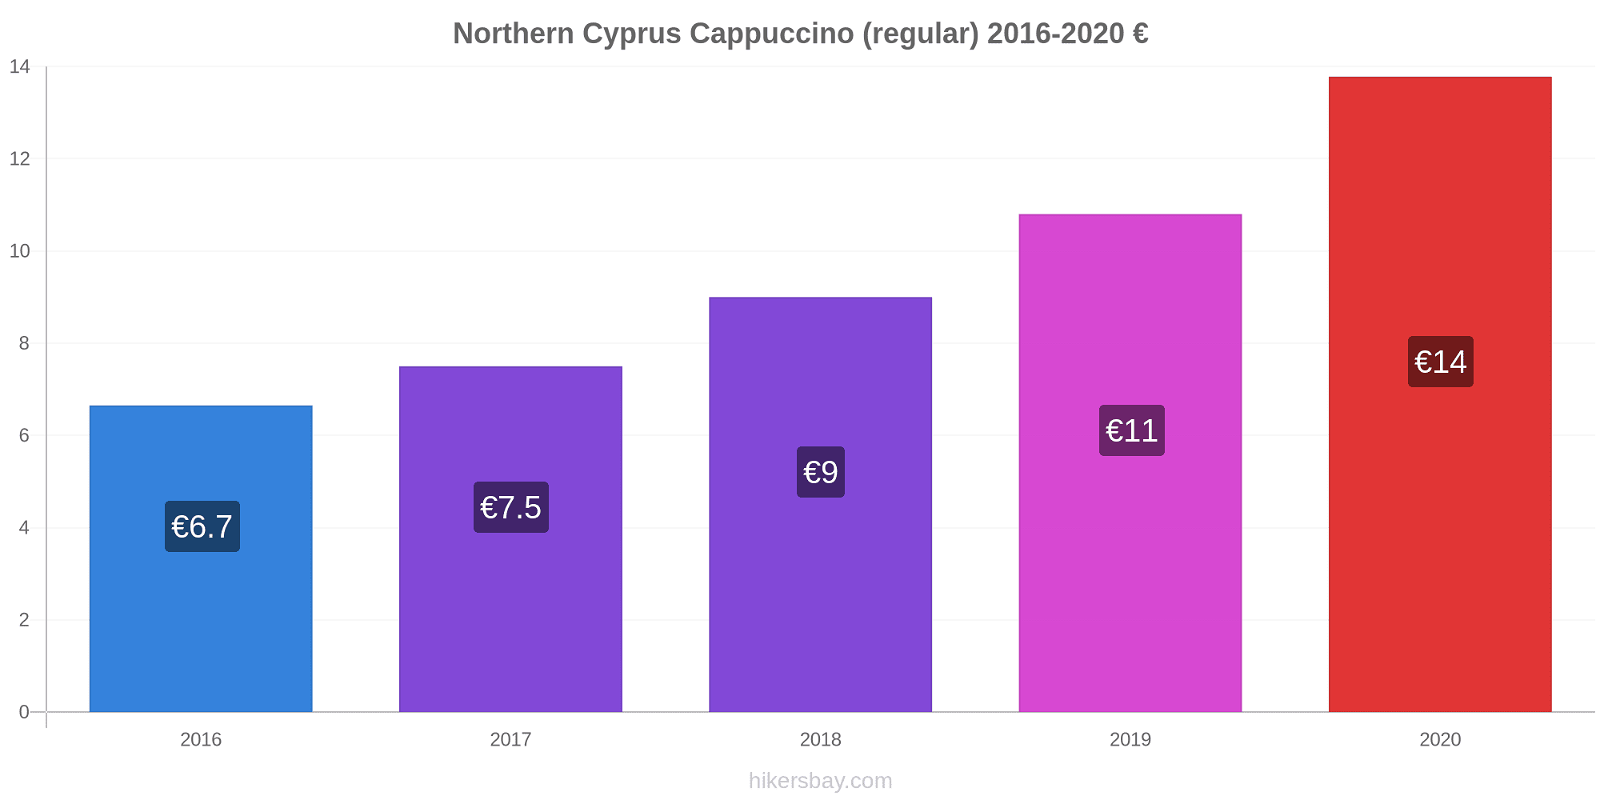 Northern Cyprus price changes Cappuccino (regular) hikersbay.com